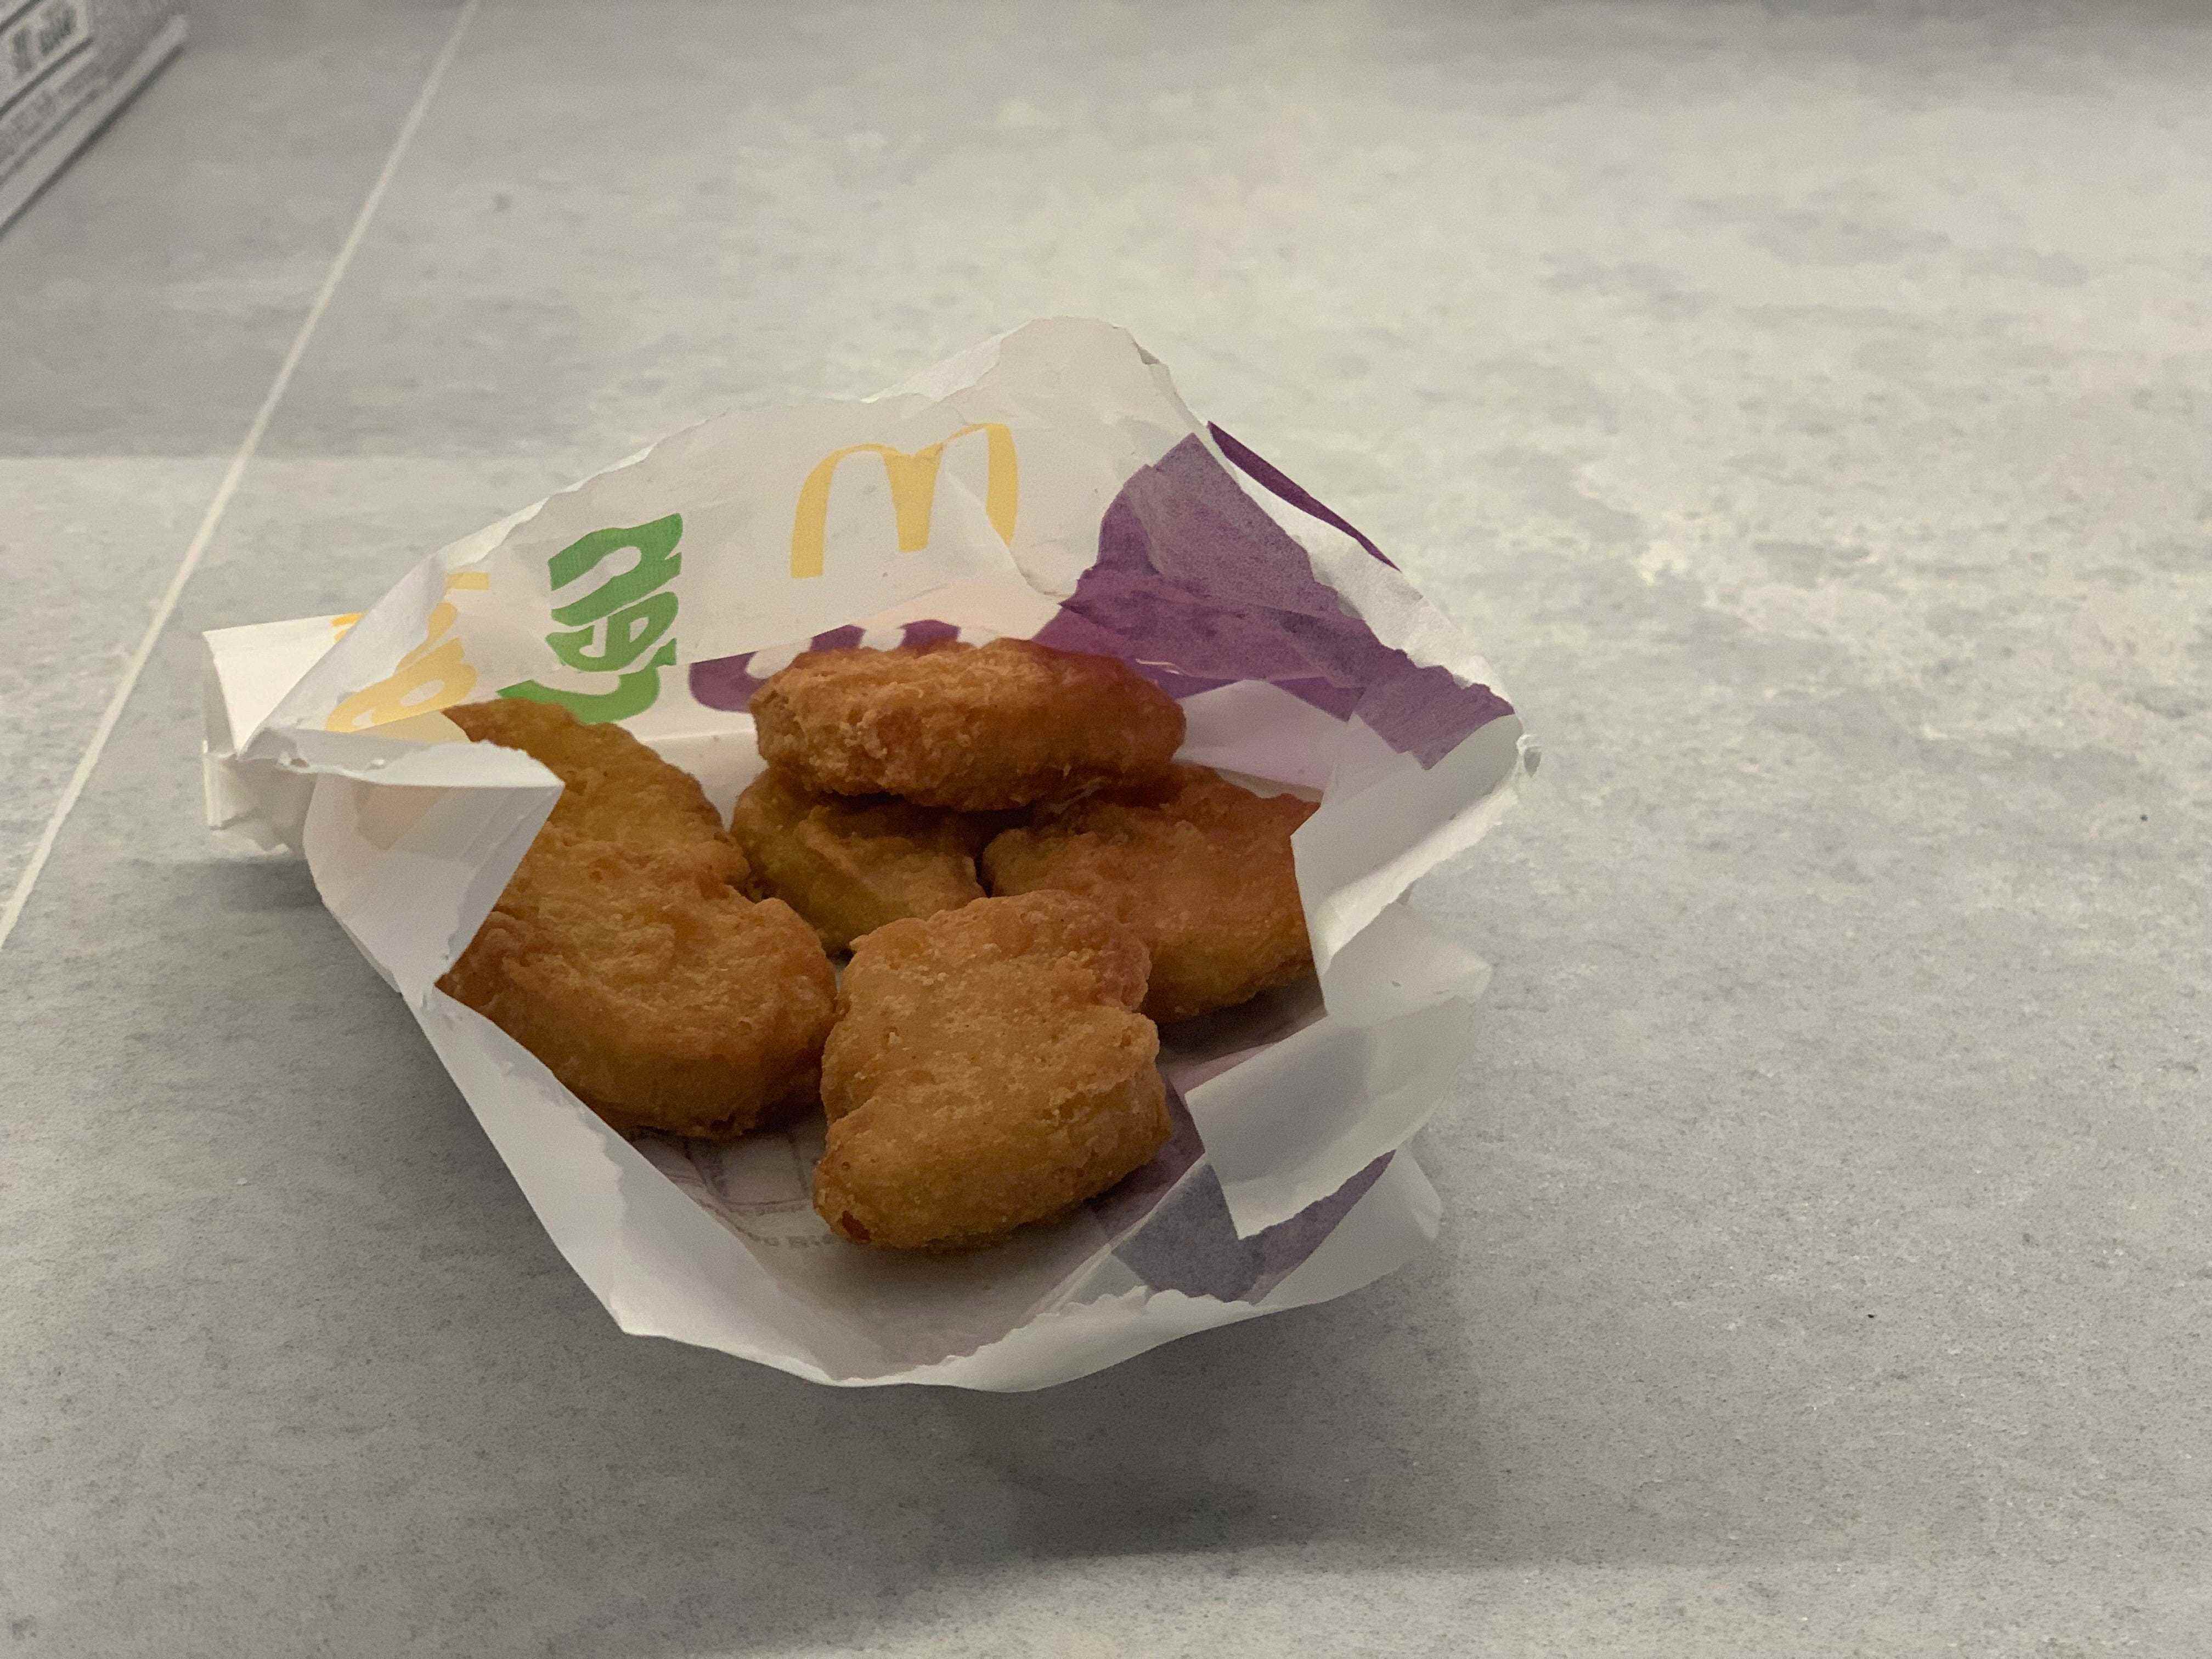 Sechs McNuggets bestellt bei McDonald's in London, UK.